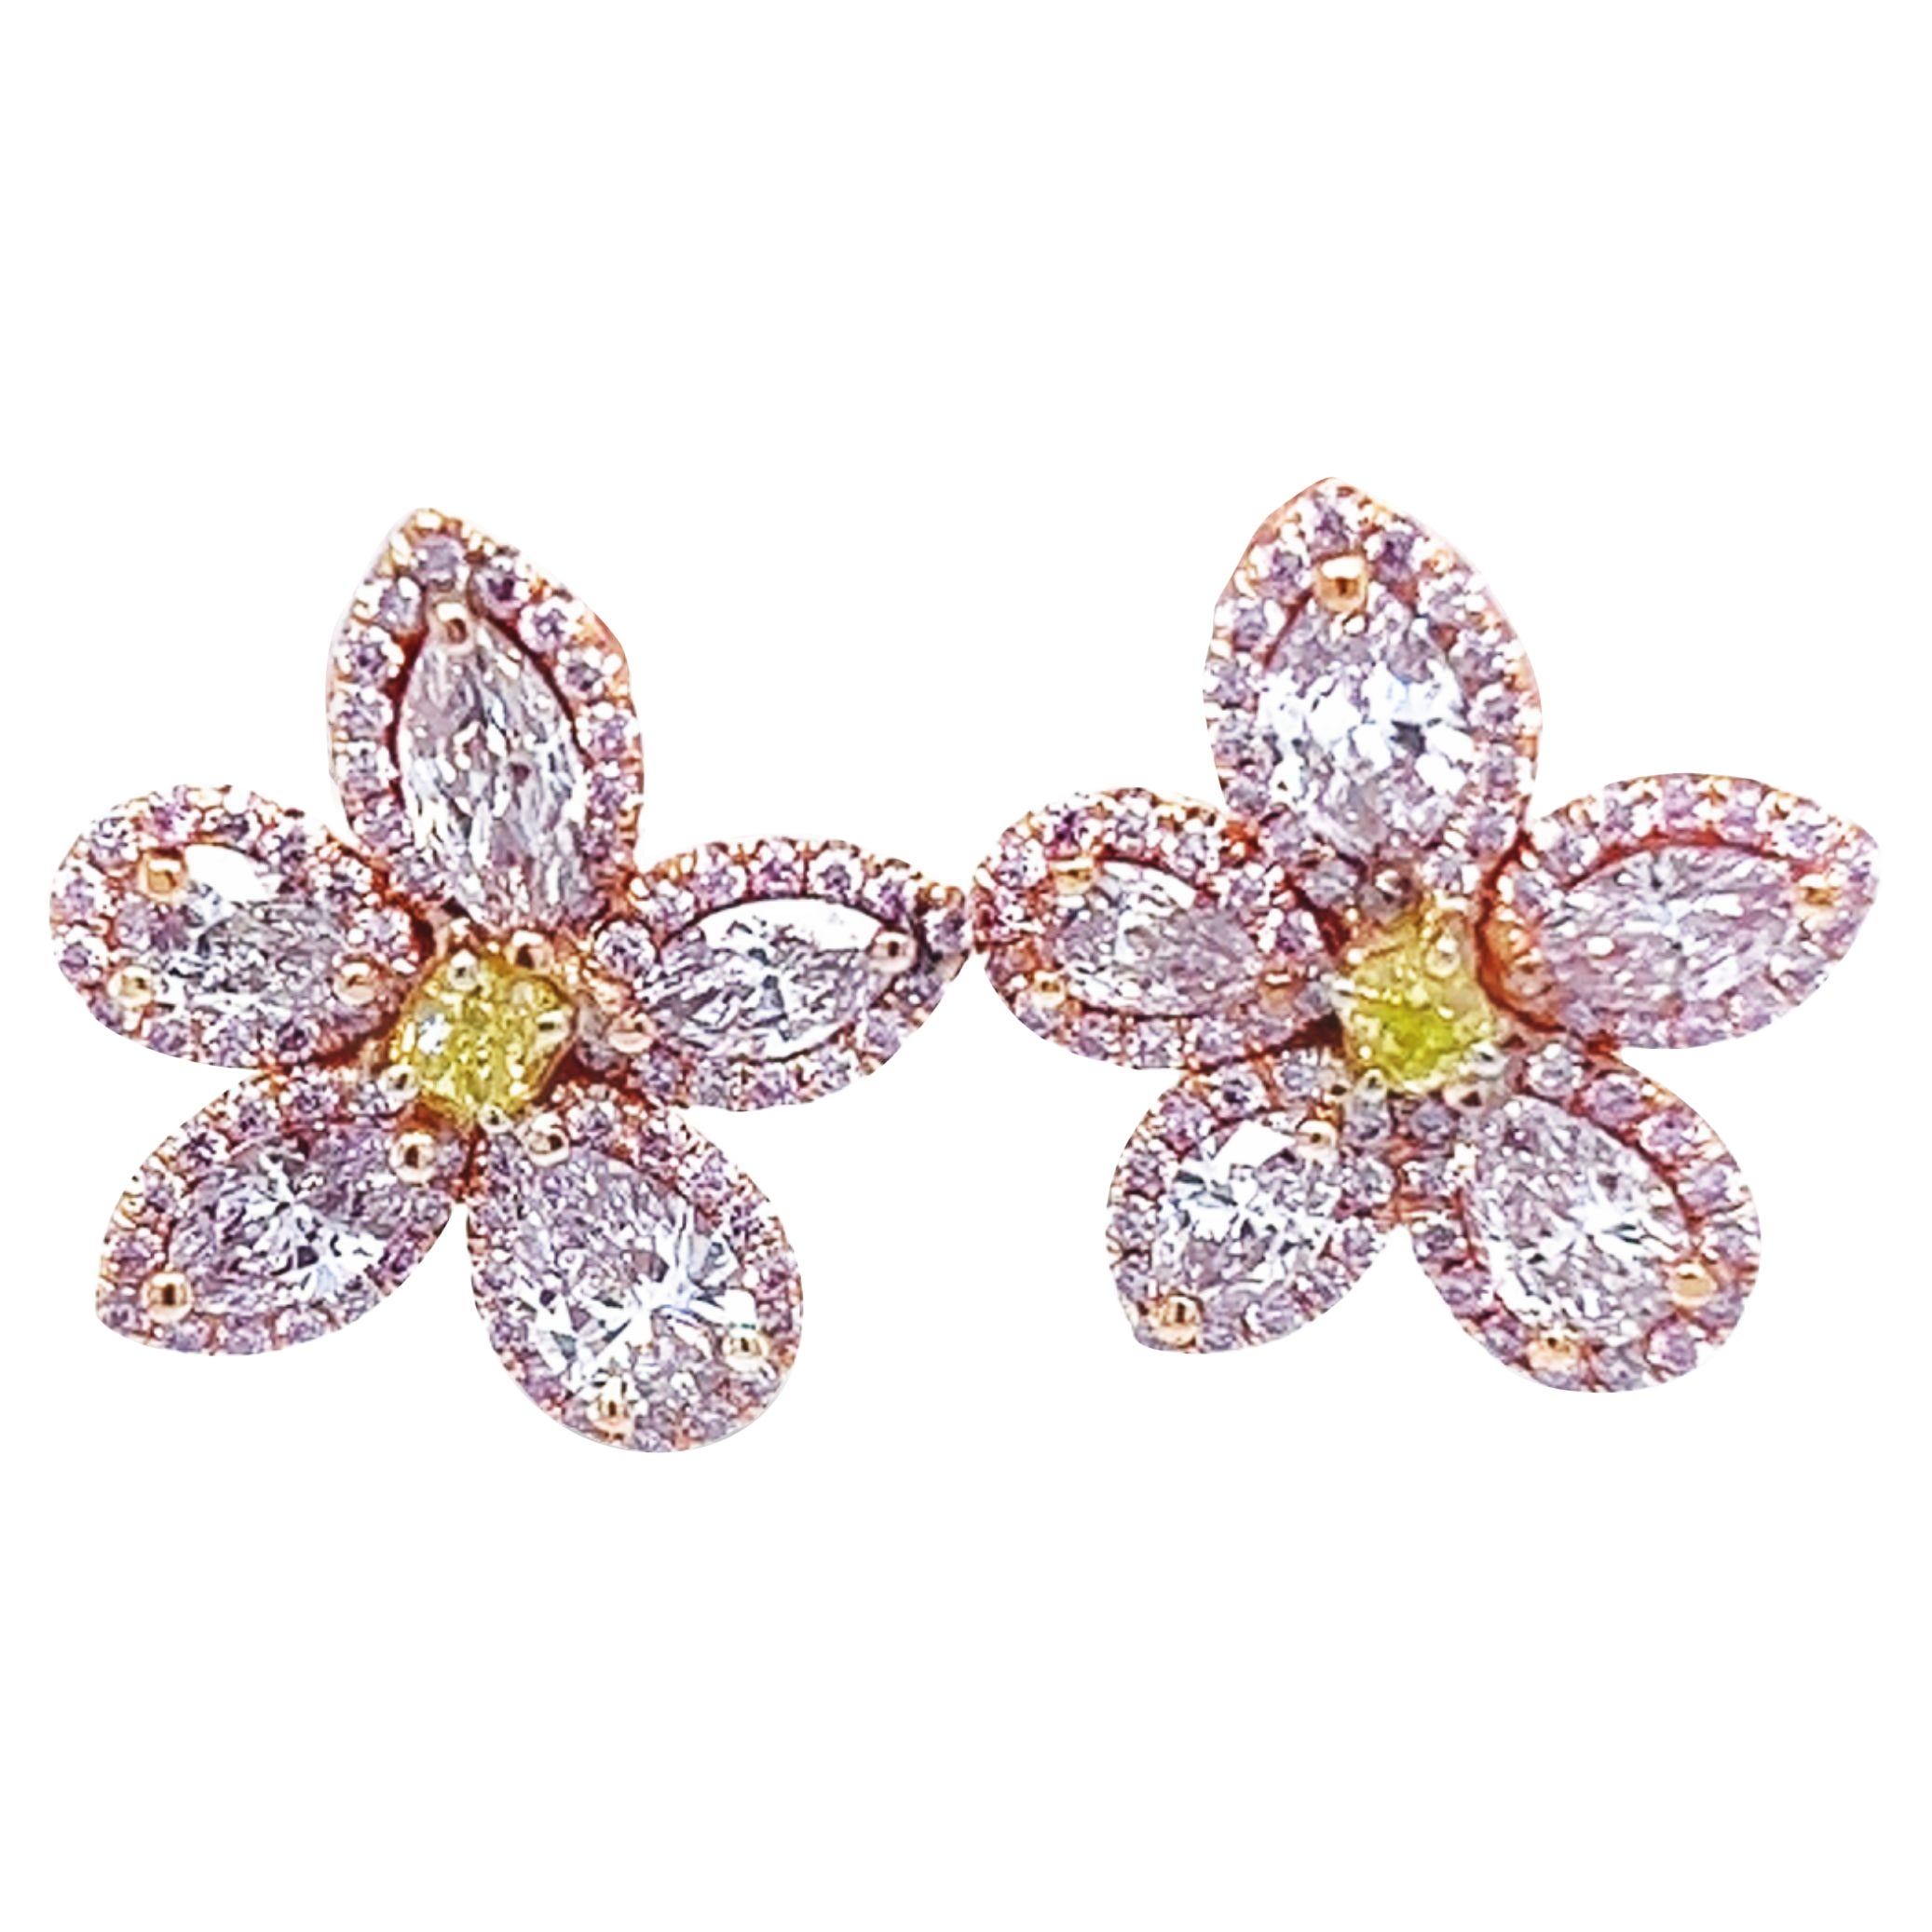 David Rosenberg 2.35 Carat Pink & Green GIA Flower Diamond Stud Earring For Sale